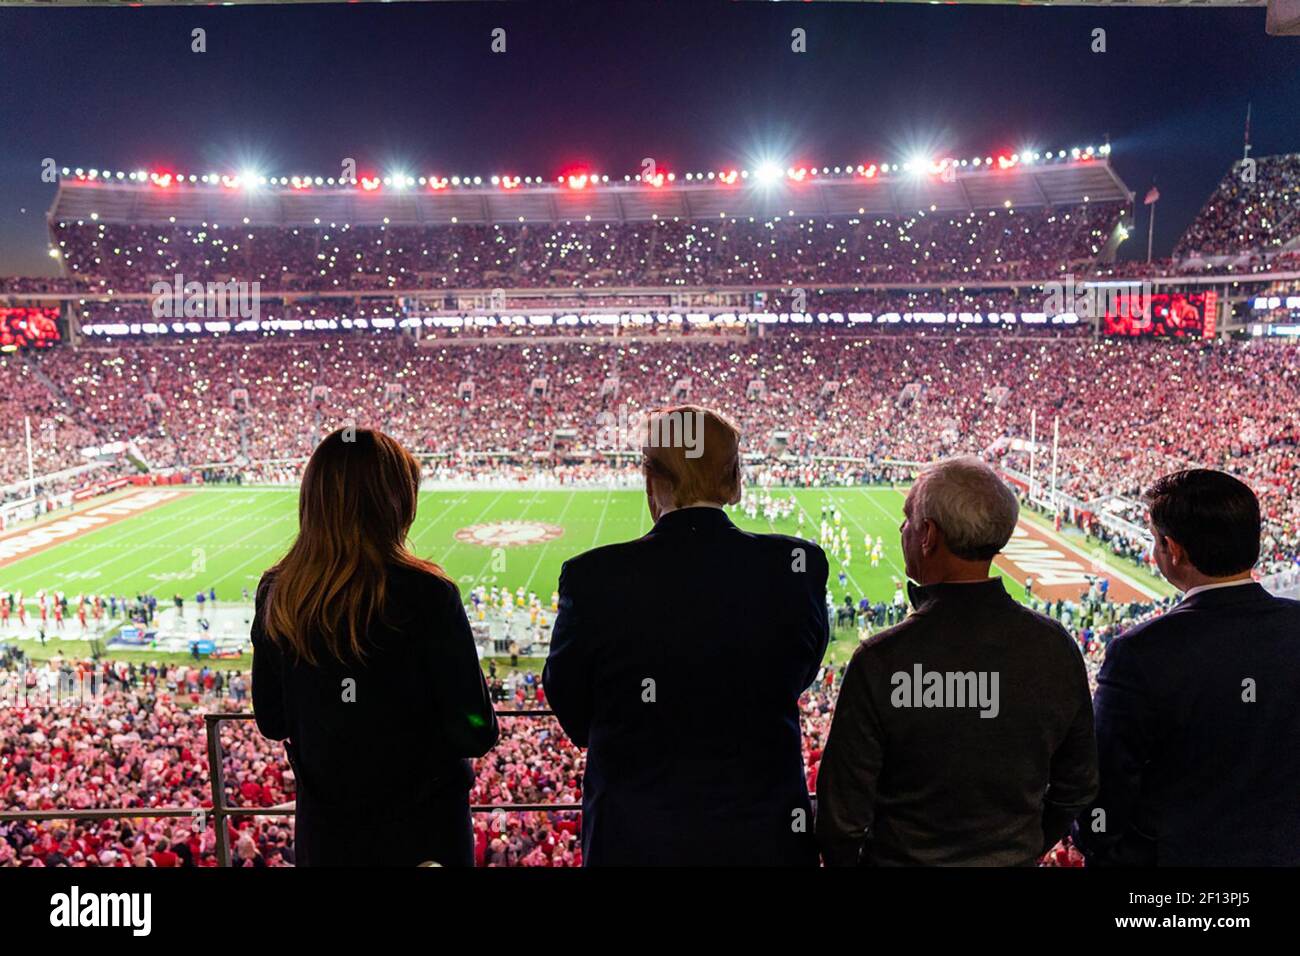 Il presidente Donald Trump e la First Lady Melania Trump guardano l'azione sul campo al Bryant-Denny Stadium sabato 9 novembre 2019 mentre partecipano alla partita di football della University of Alabama - Louisiana state University a Tuscaloosa Ala. Foto Stock